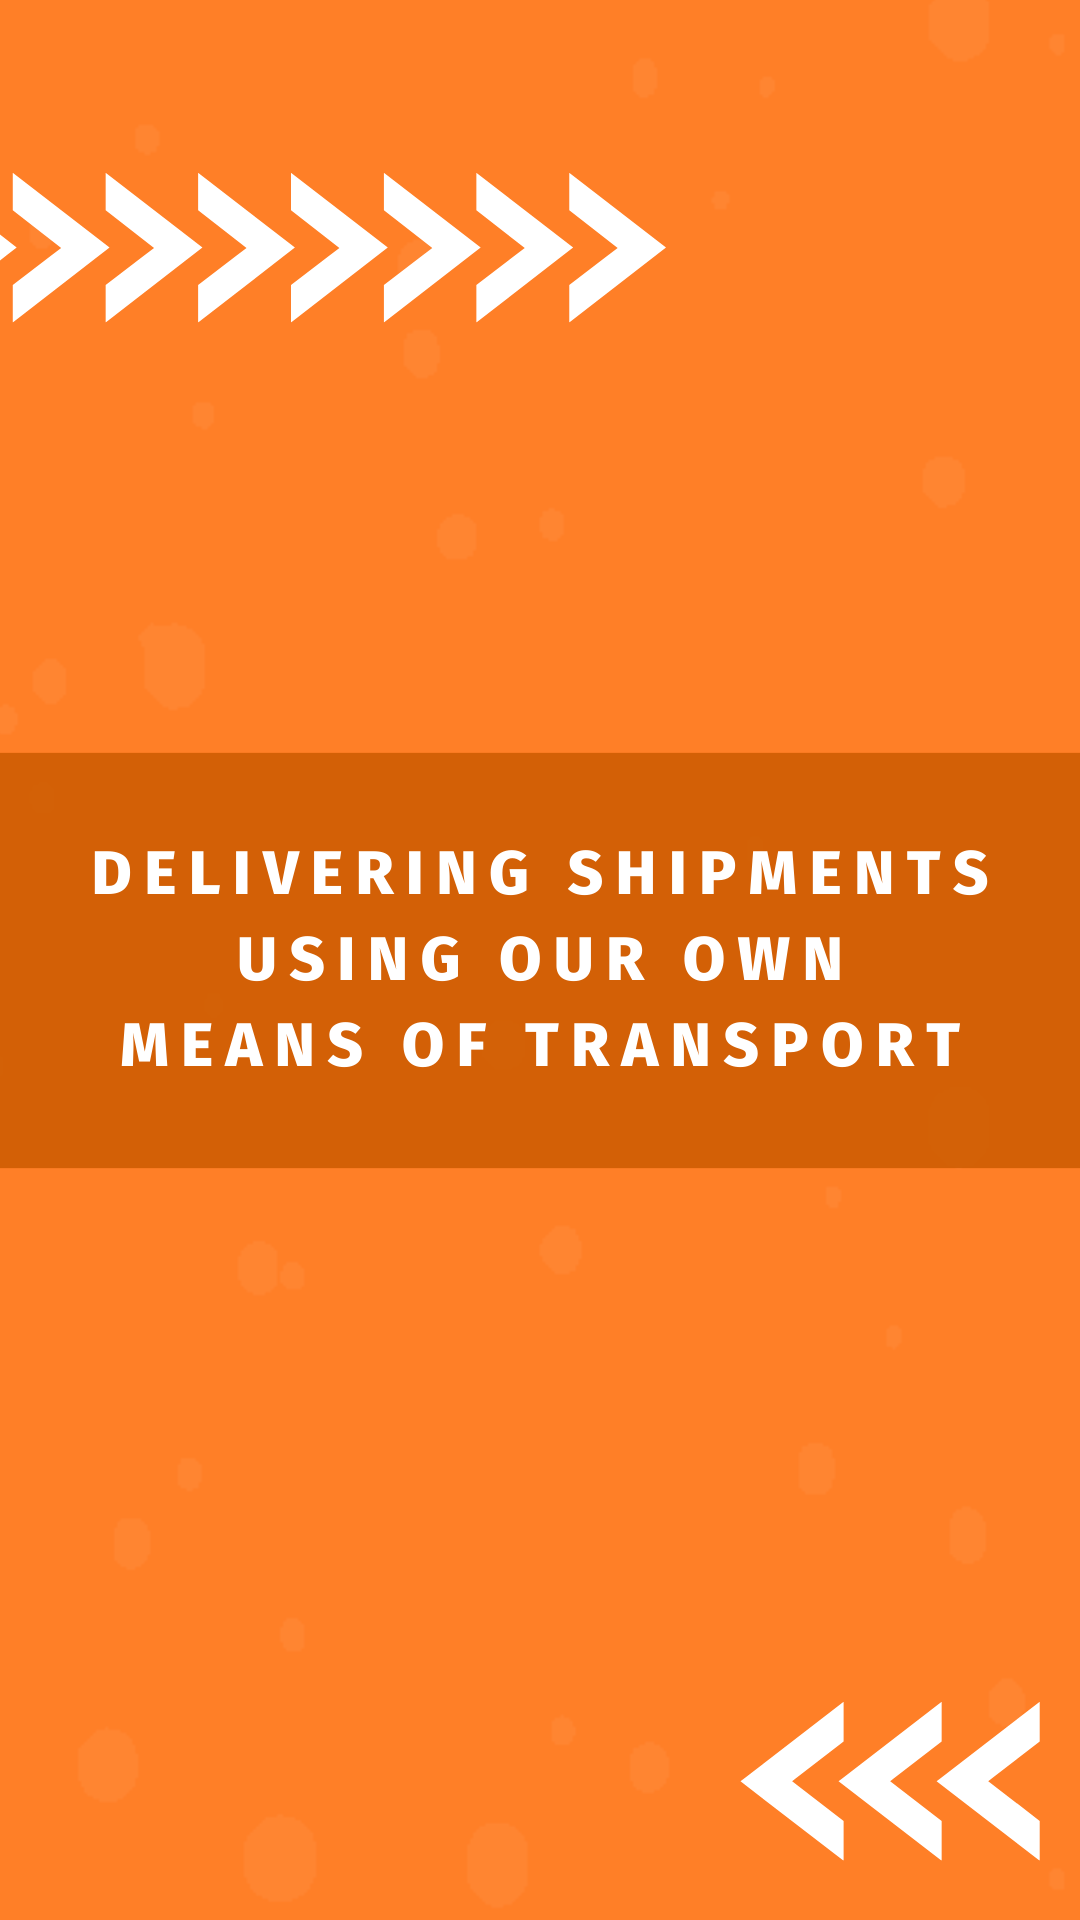 Delivering shipments at Amdoko wholesaler